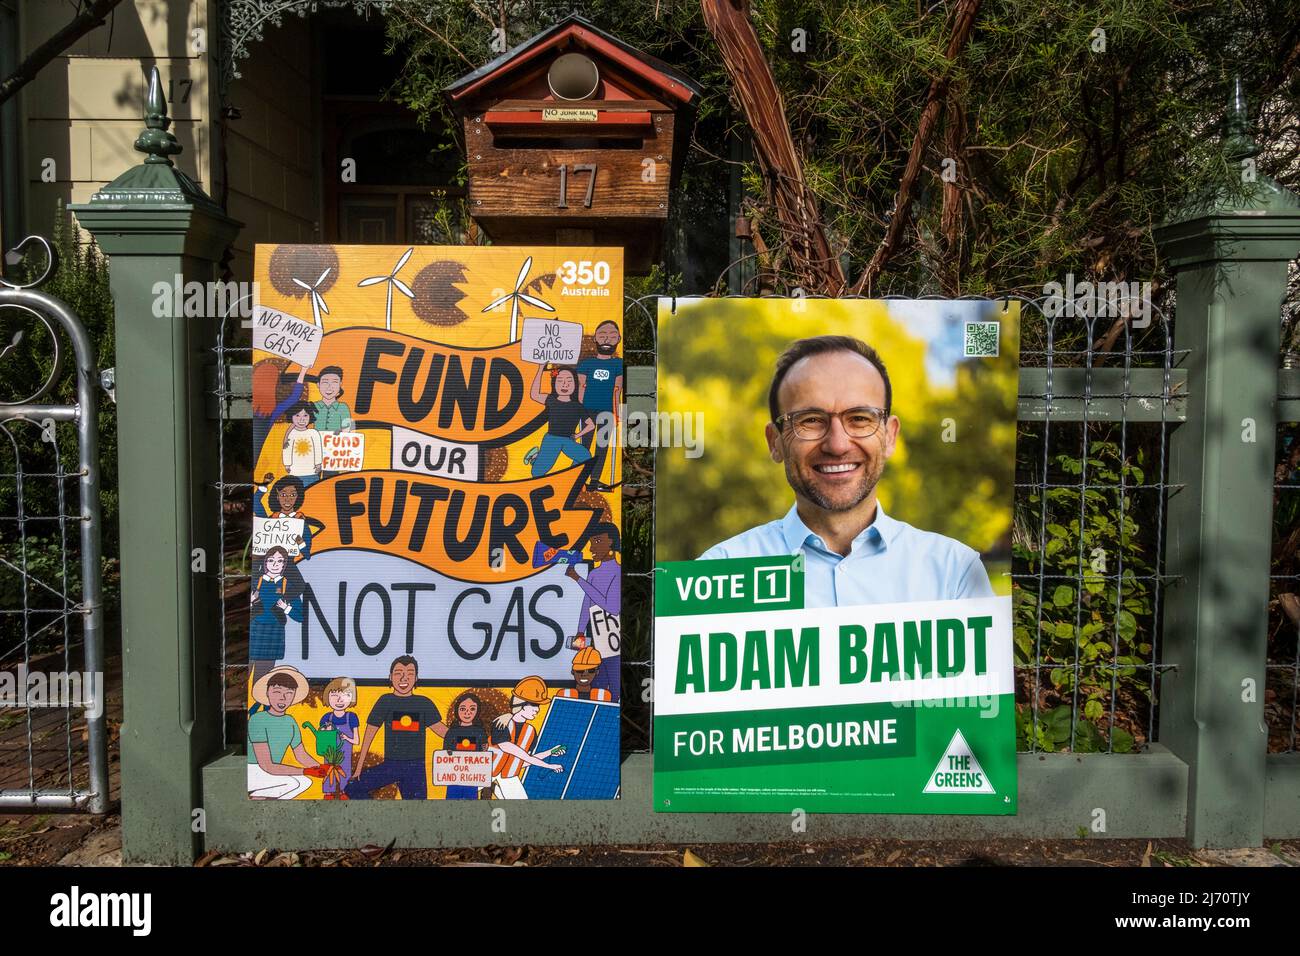 Manifesti politici che pubblicizzano Adam Bandt, leader del partito dei Verdi che contesta la sede di Melbourne nelle elezioni federali australiane del 2022. Foto Stock